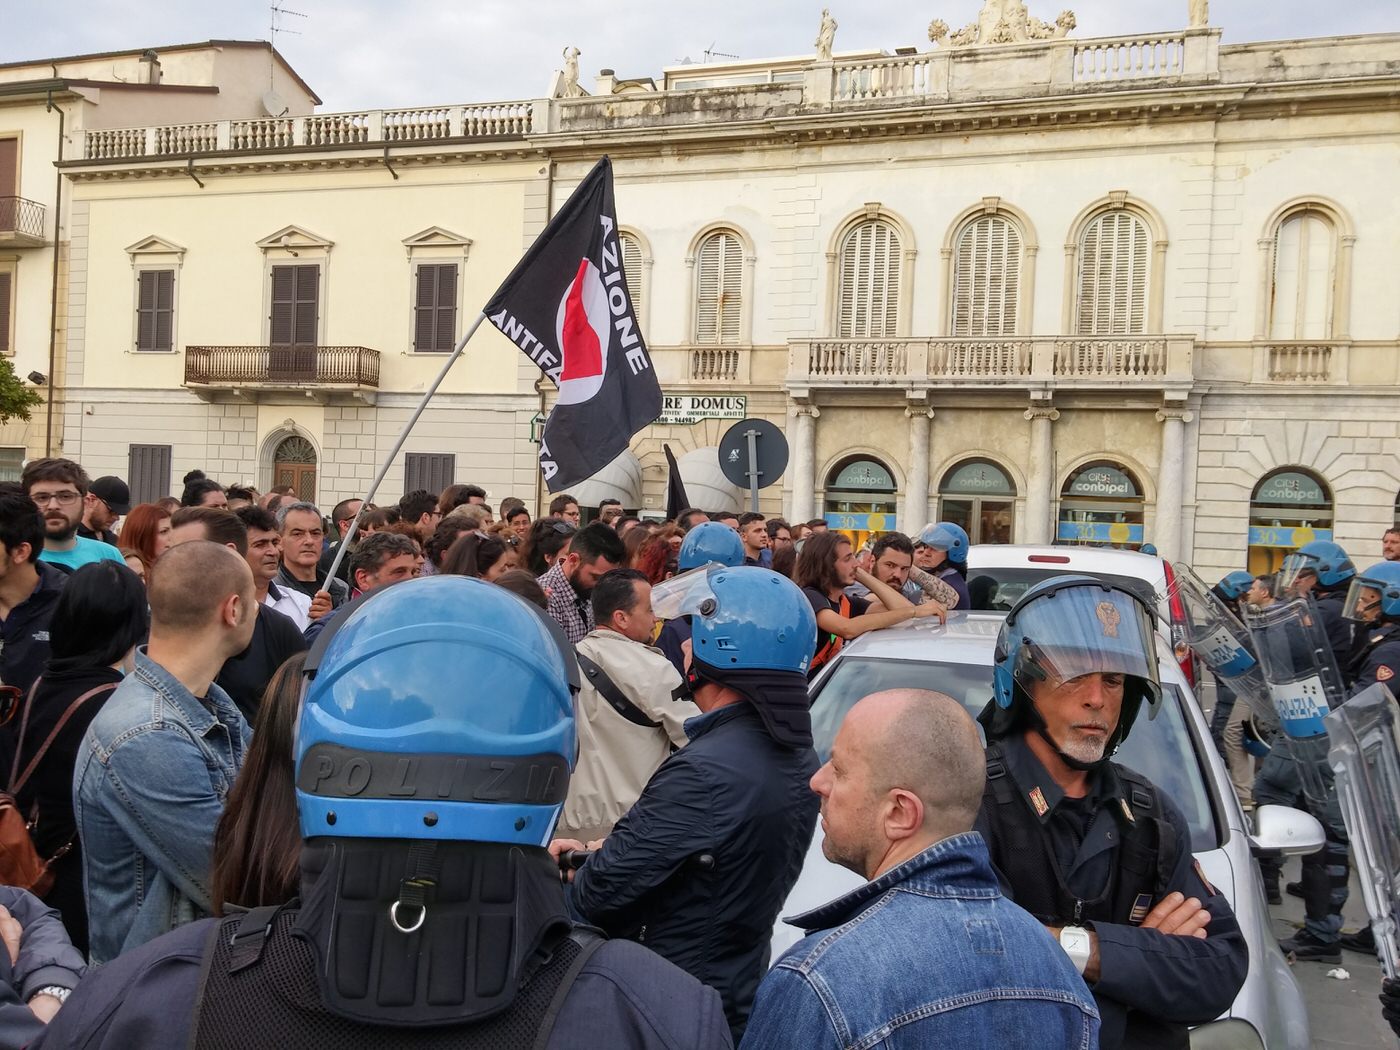 “Libero fischio in libera piazza”, Repubbica Viareggina commenta l’assoluzione